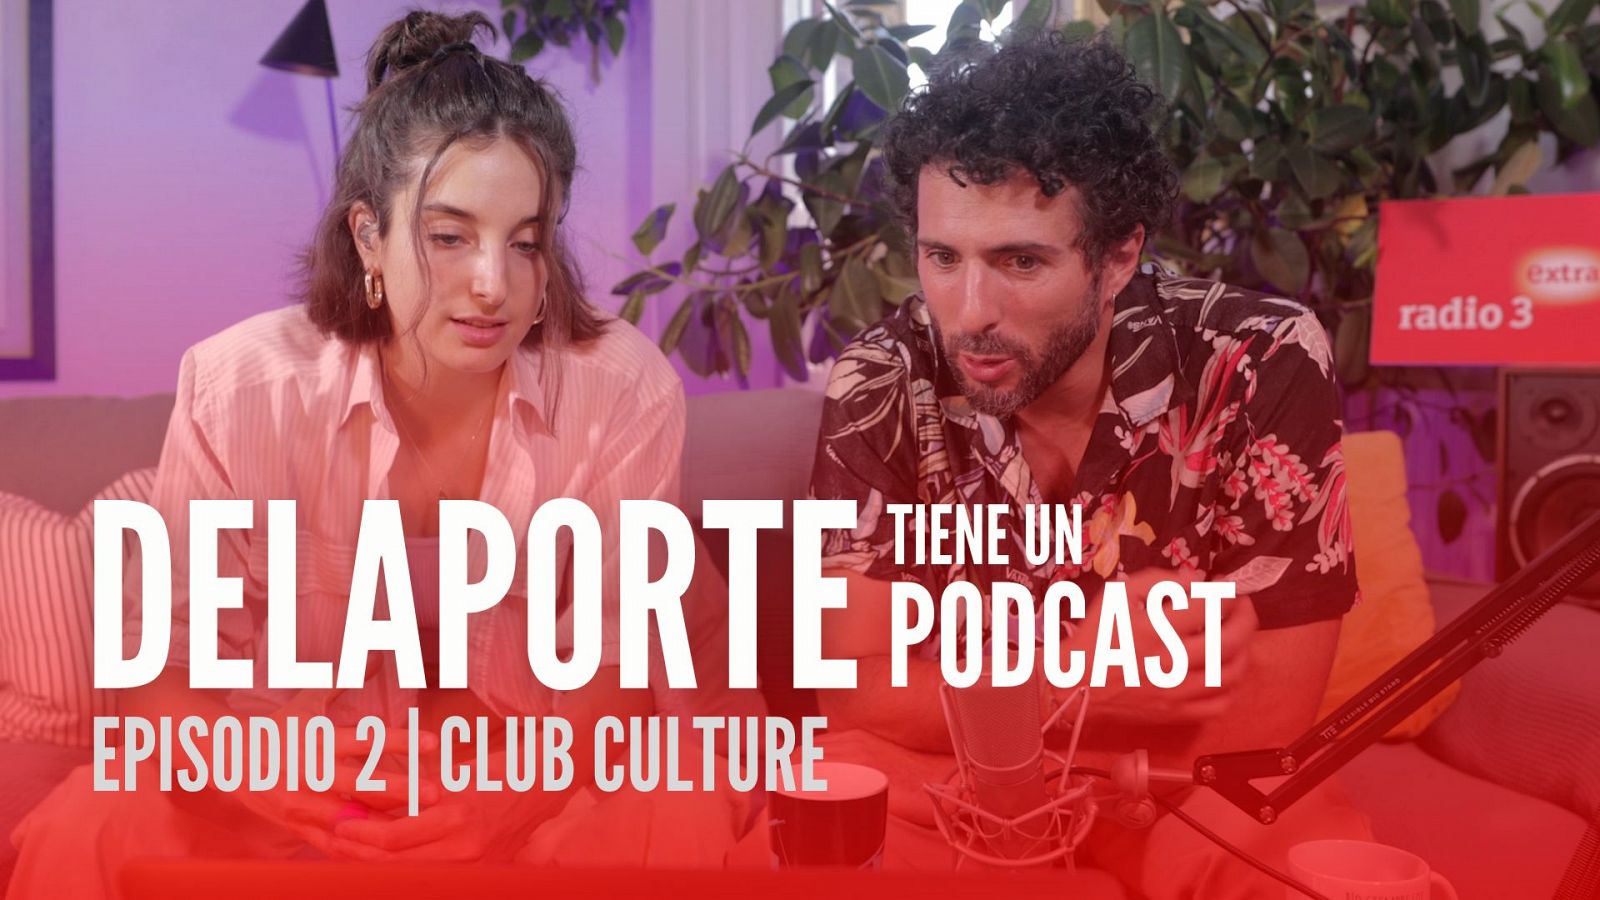 Delaporte tiene un podcast - Episodio 2: club culture - 22/09/2022 - Ver ahora